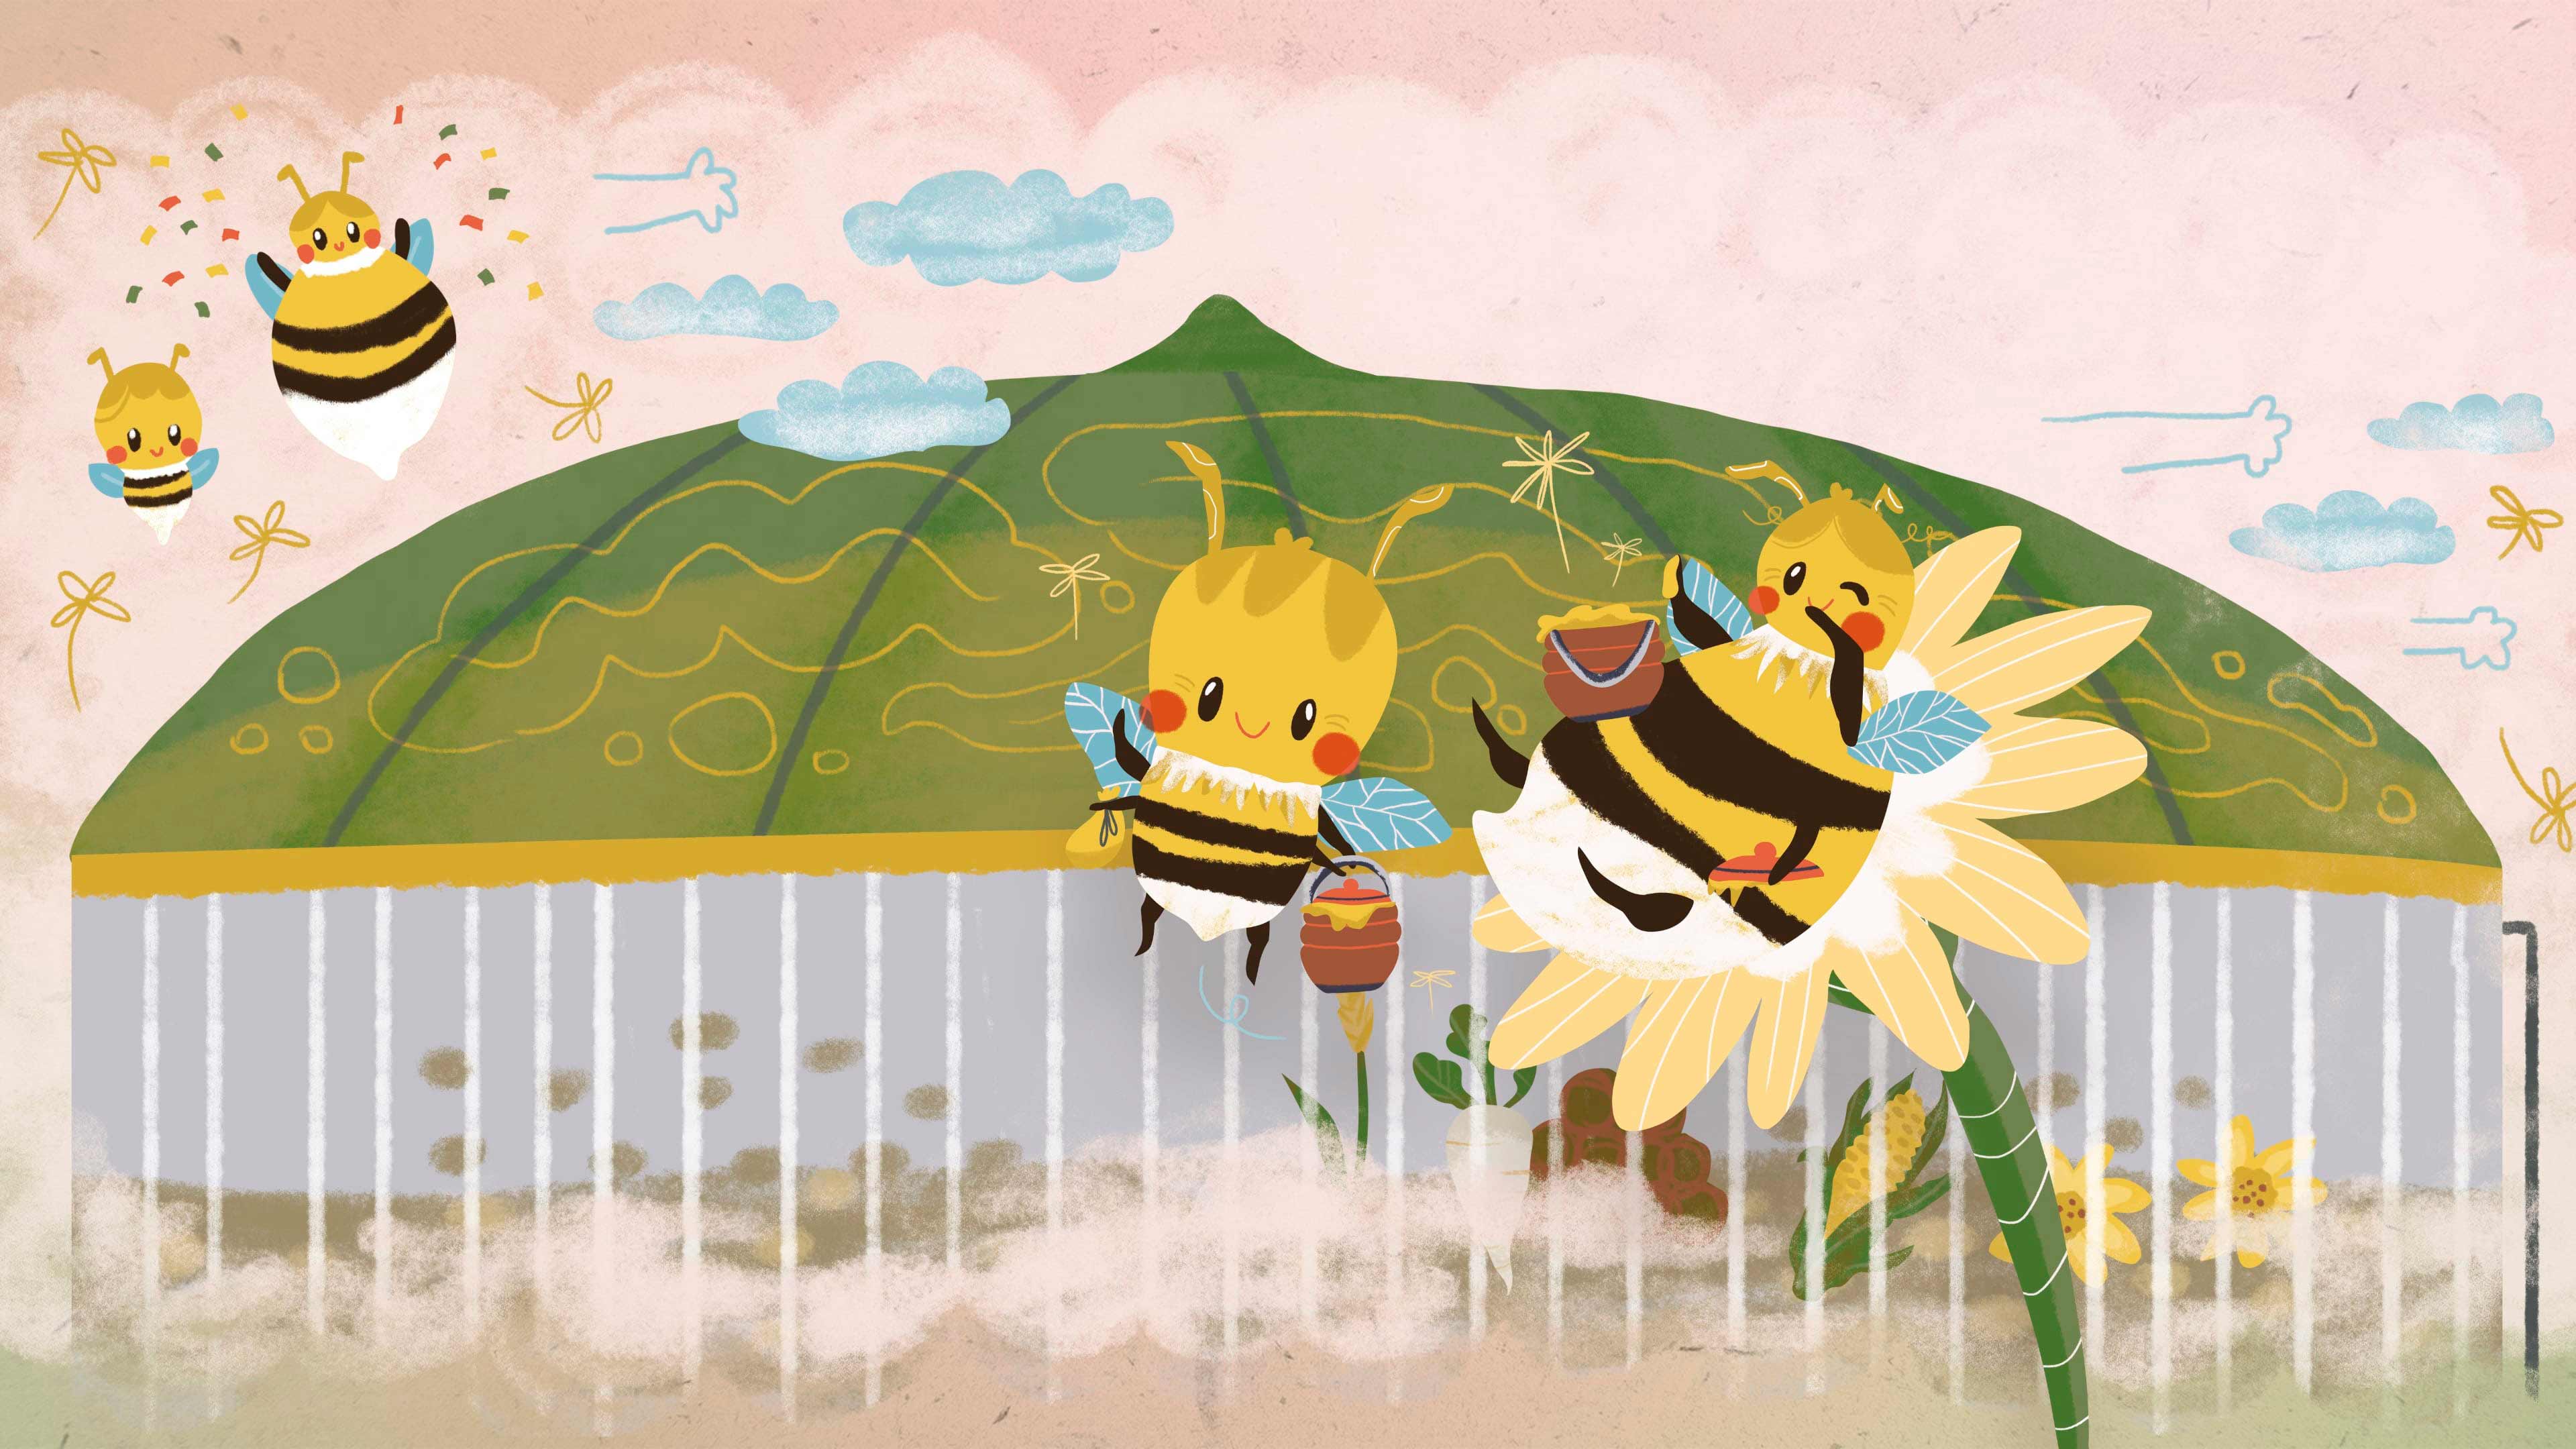 Bunt illustrierte Bienen vor einer Biogasanlage